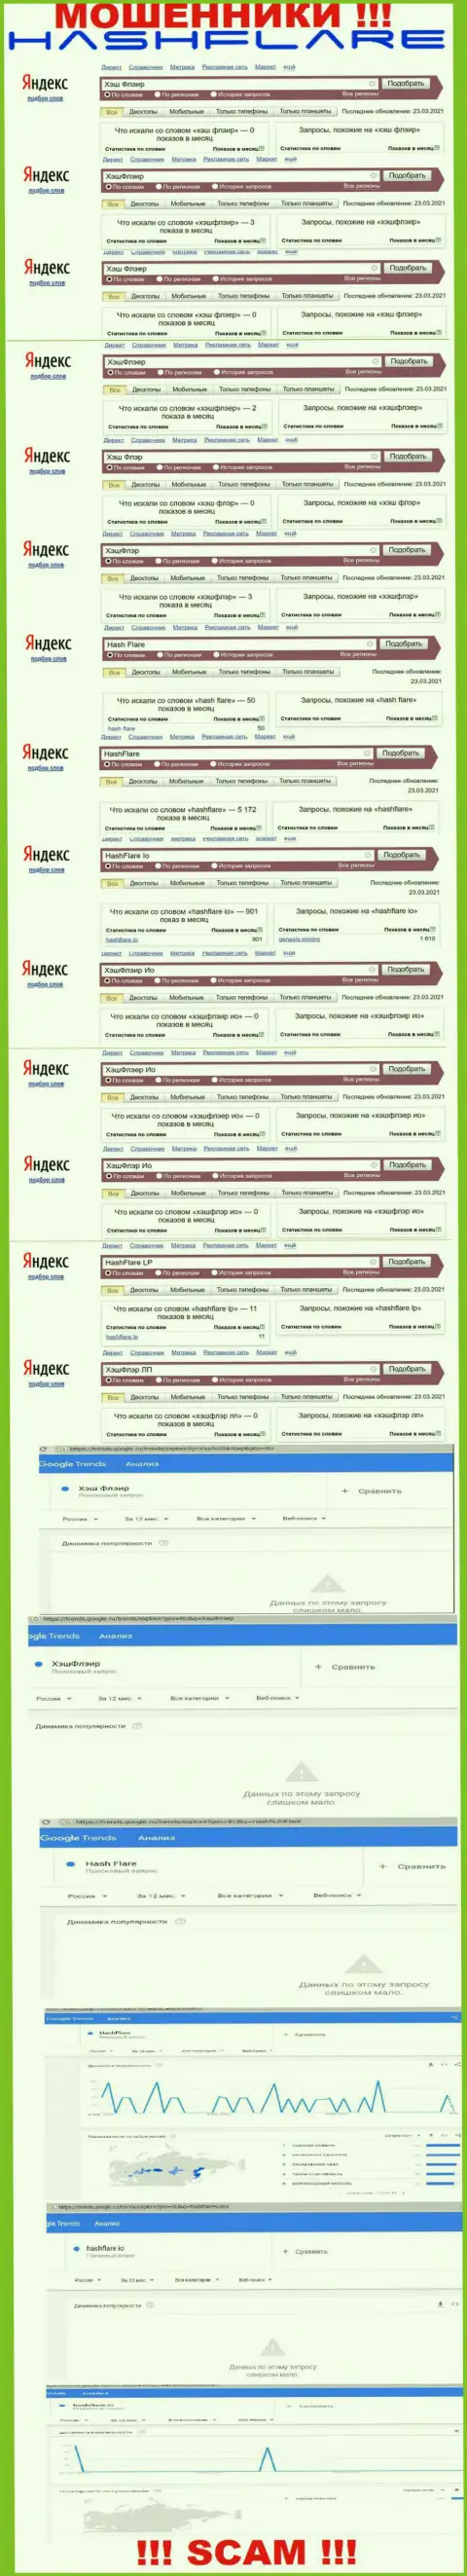 Число поисковых запросов в поисковиках всемирной сети internet по бренду мошенников HashFlare